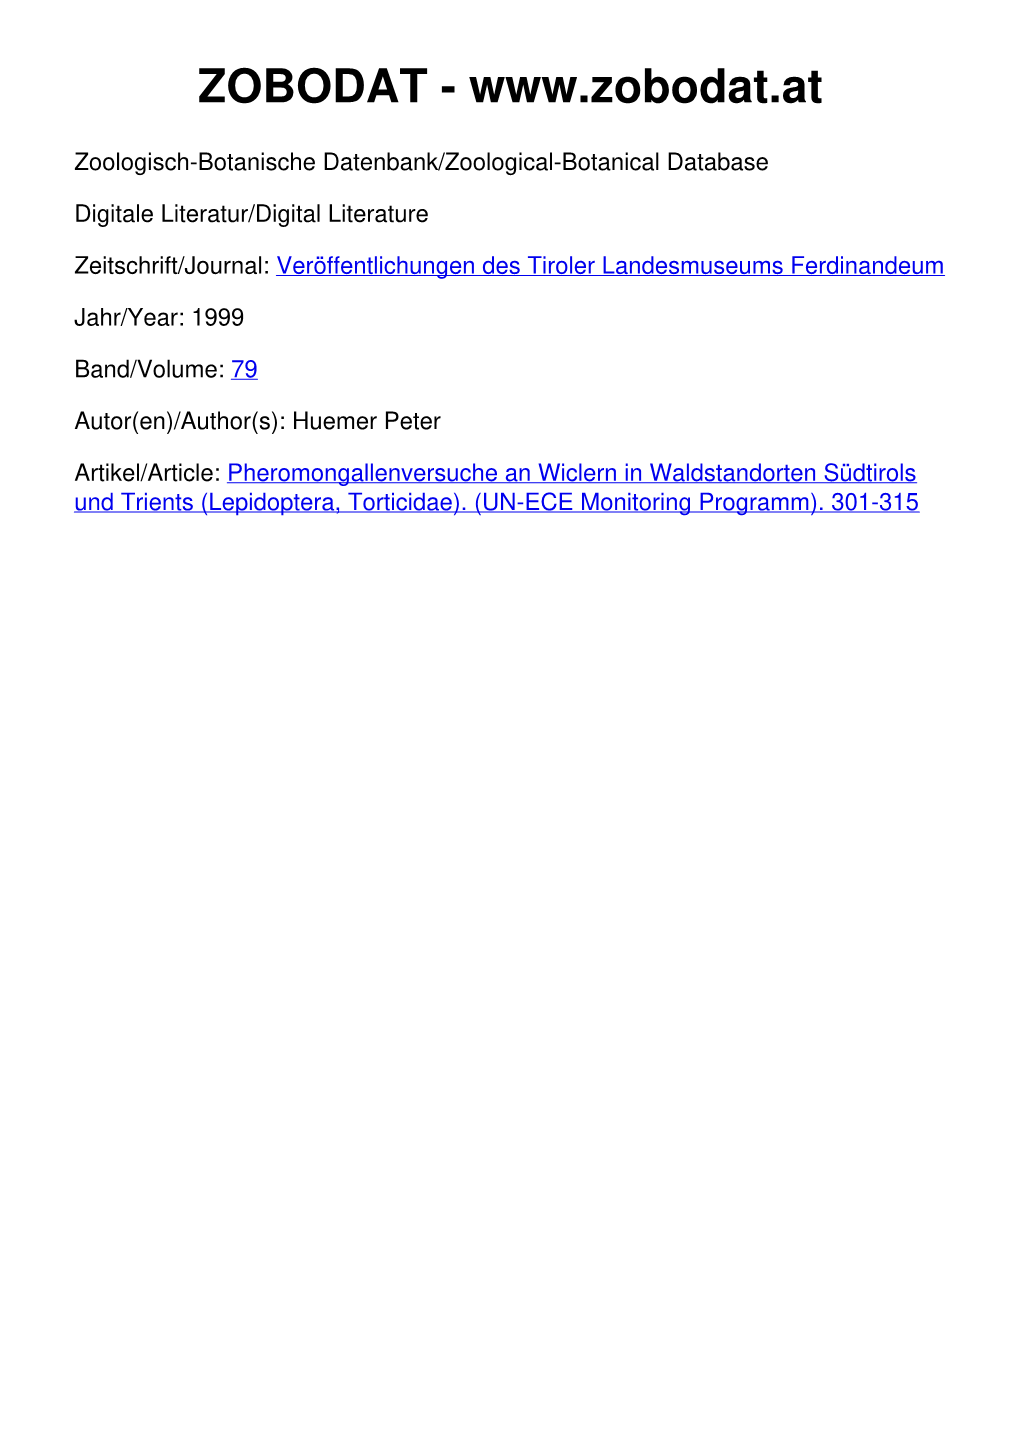 Pheromonfallenversuche an Wicklern in Waldstandorten Südtirols Und Trients (Lepidoptera, Tortricidae) (UN-ECE Monitoring Programm)